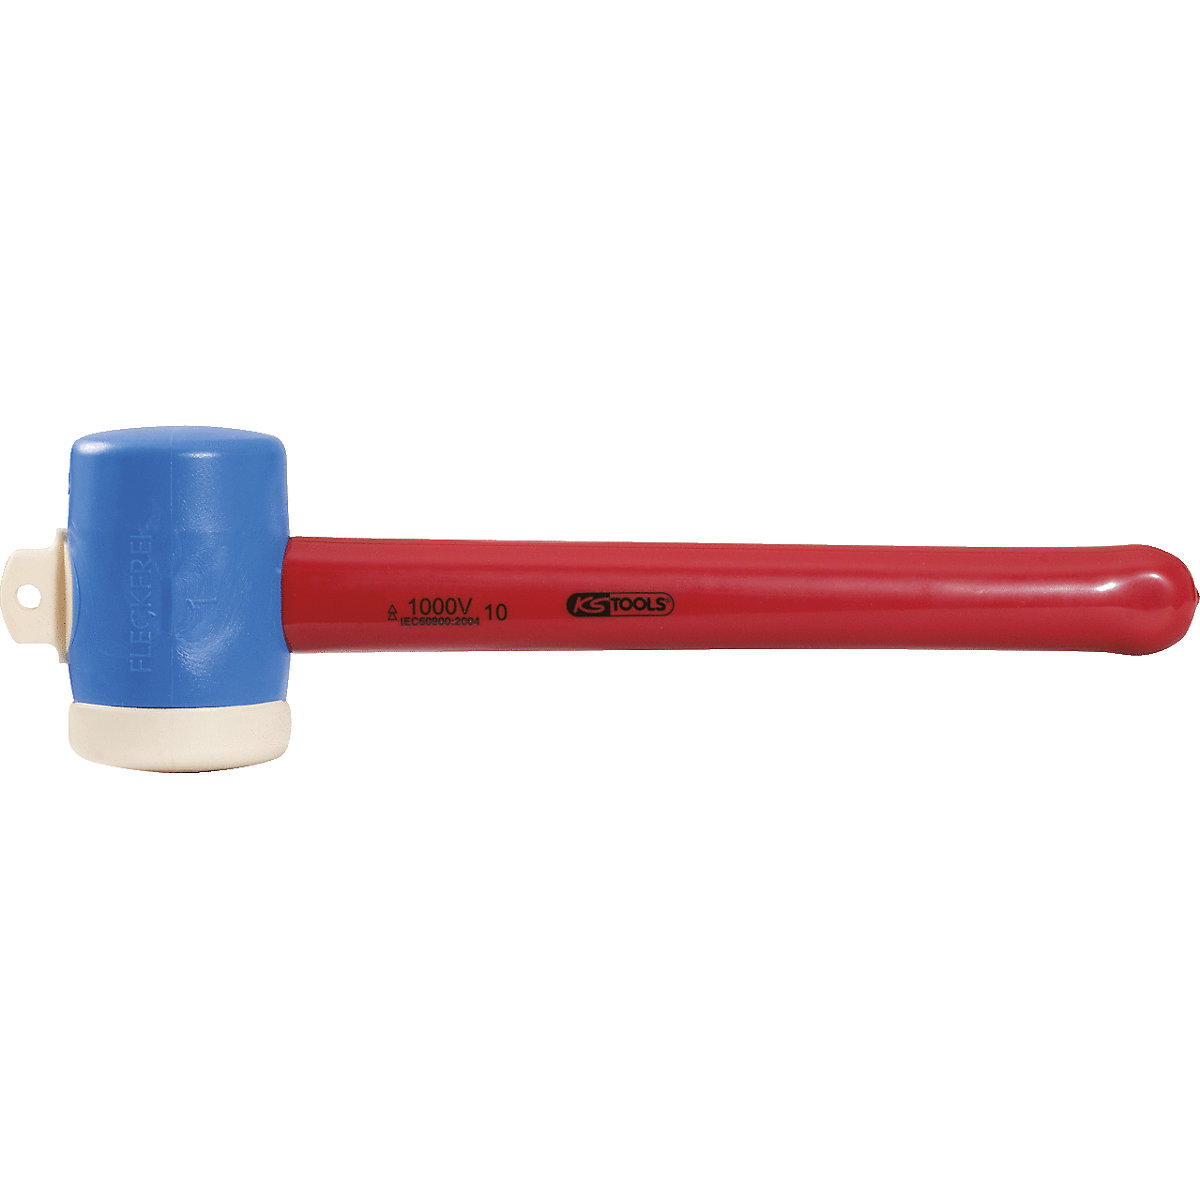 Kunststof hamer met beschermende isolatie - KS Tools